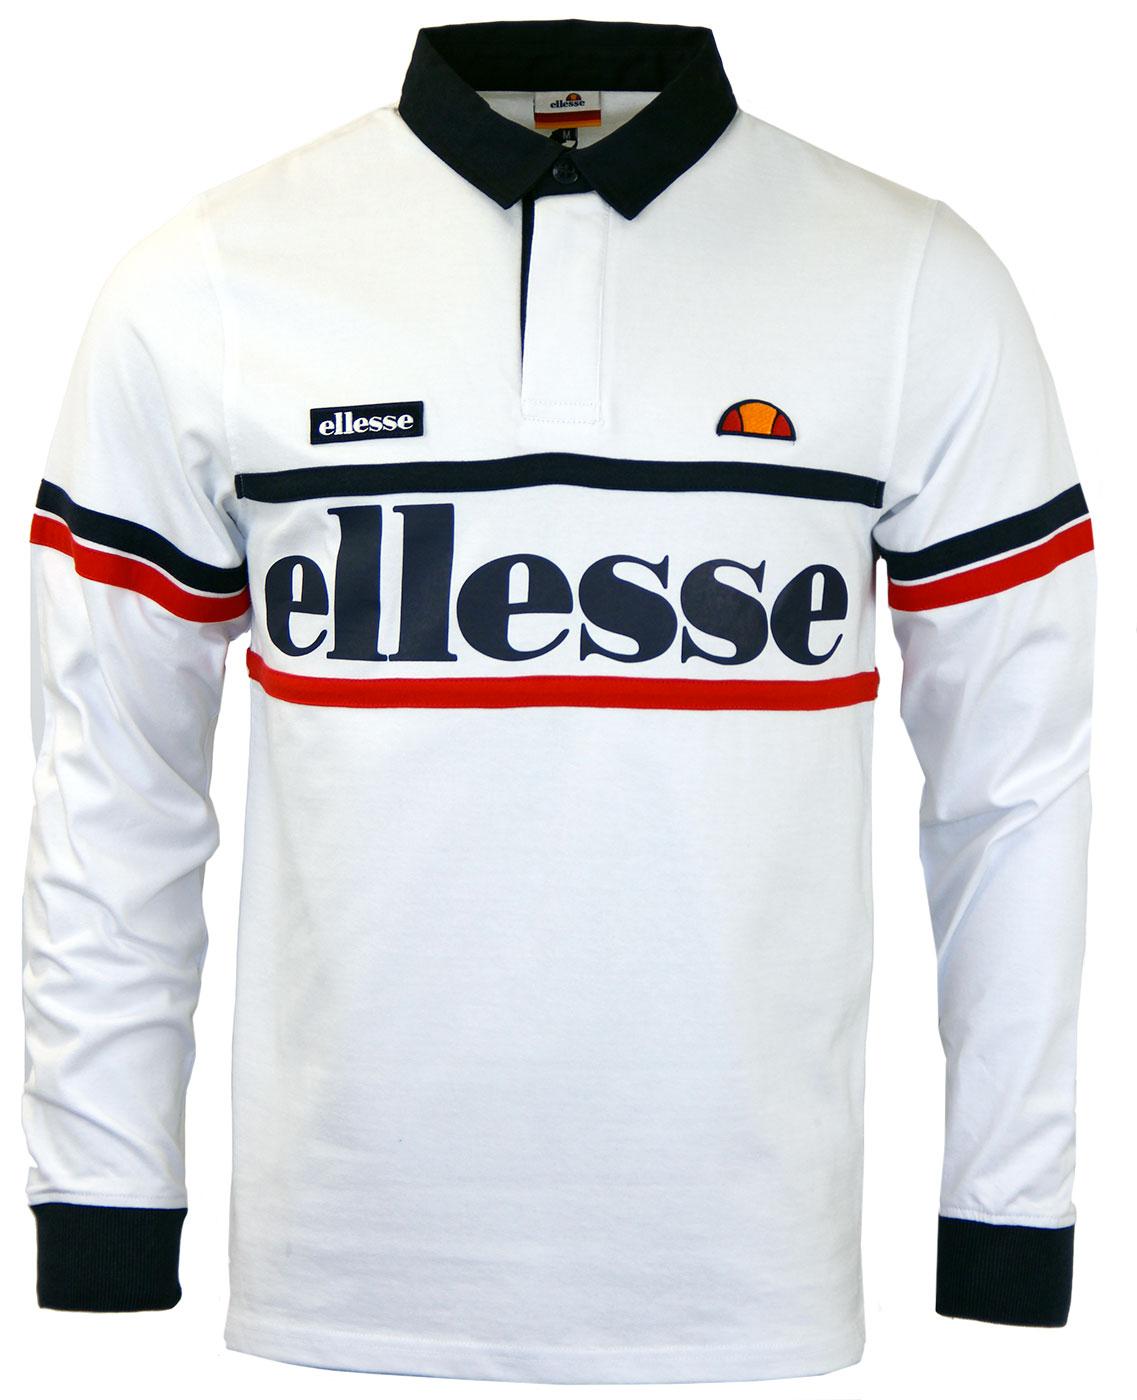 Ghiraldini ELLESSE Retro 1980s Stripe Rugby Top W